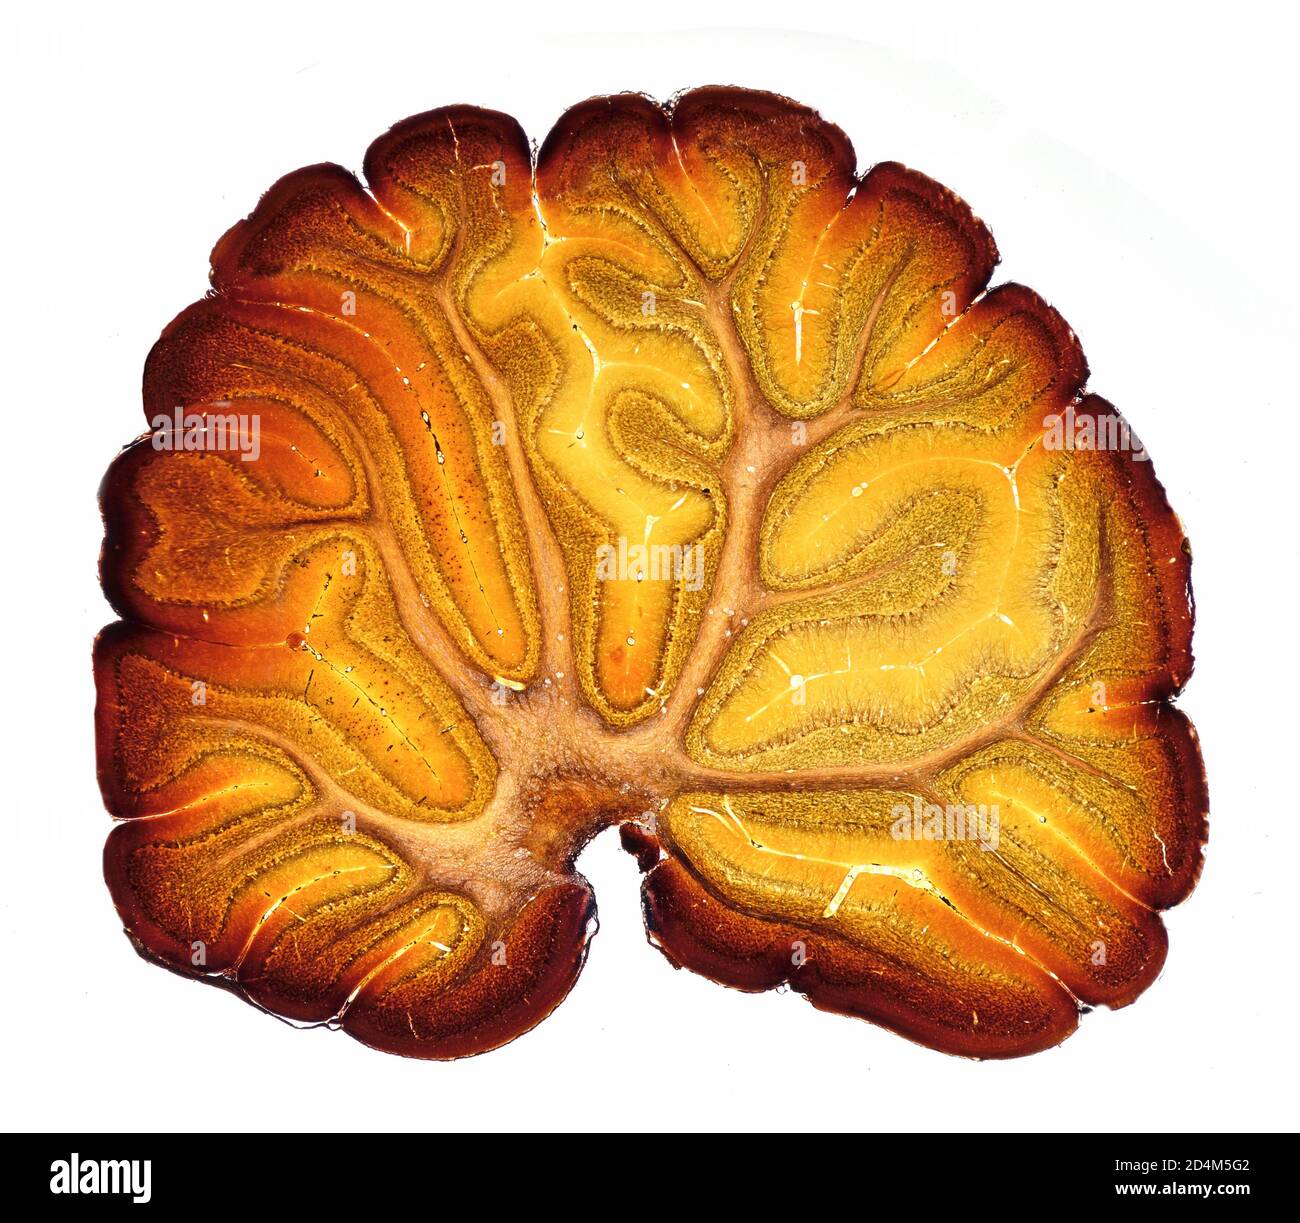 SECTION cervelet du cerveau de cobaye, photomicrographe à fond clair Banque D'Images